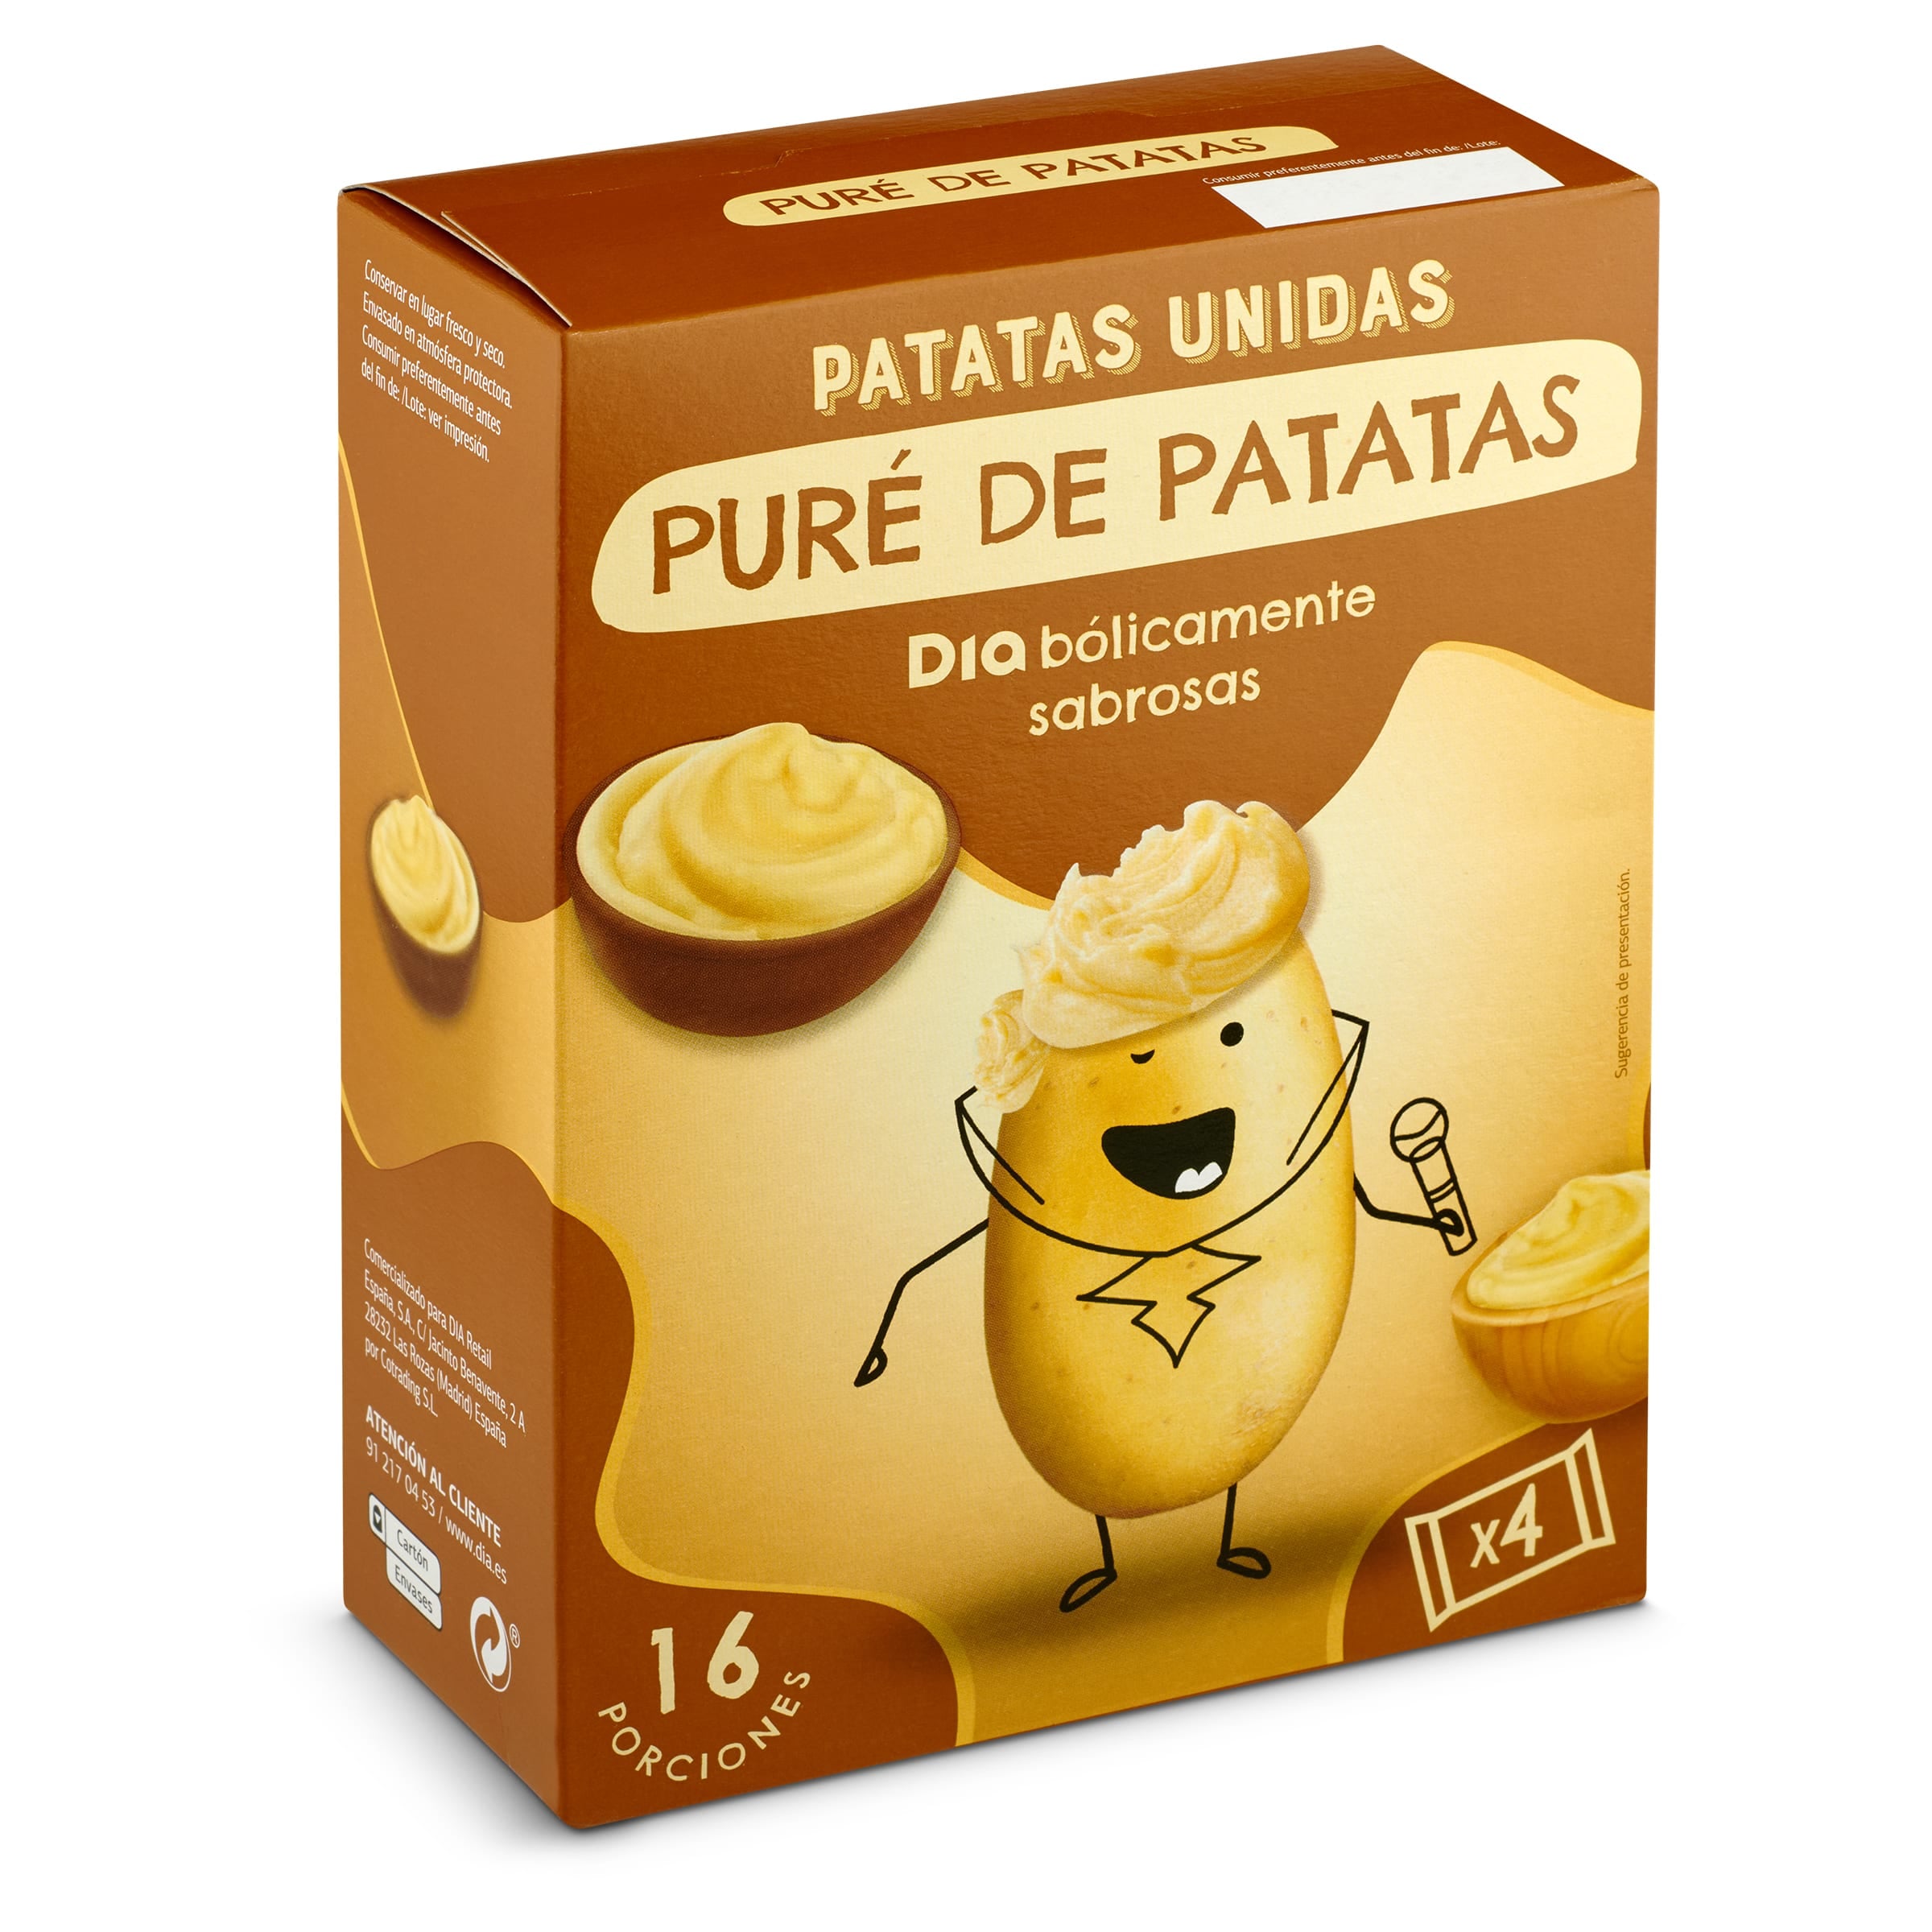 Puré de patatas Patatas Unidas caja 500 g - Supermercados DIA